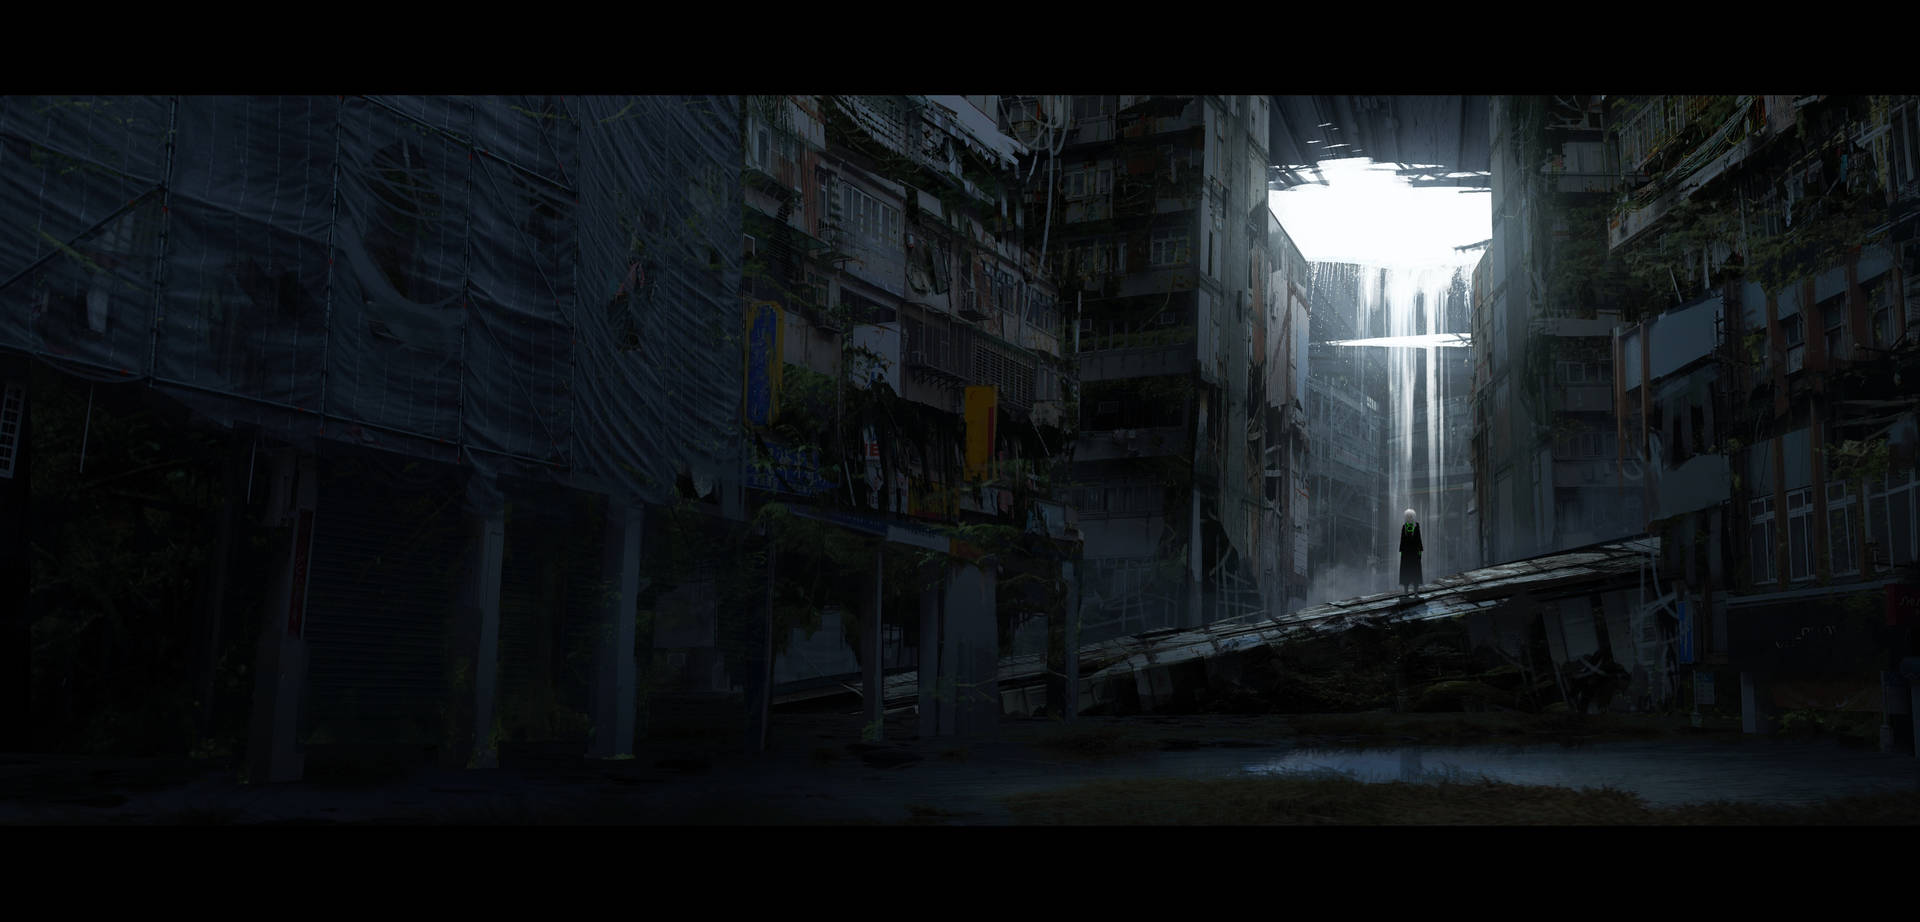 Mørk anime dystopisk by scene. Wallpaper